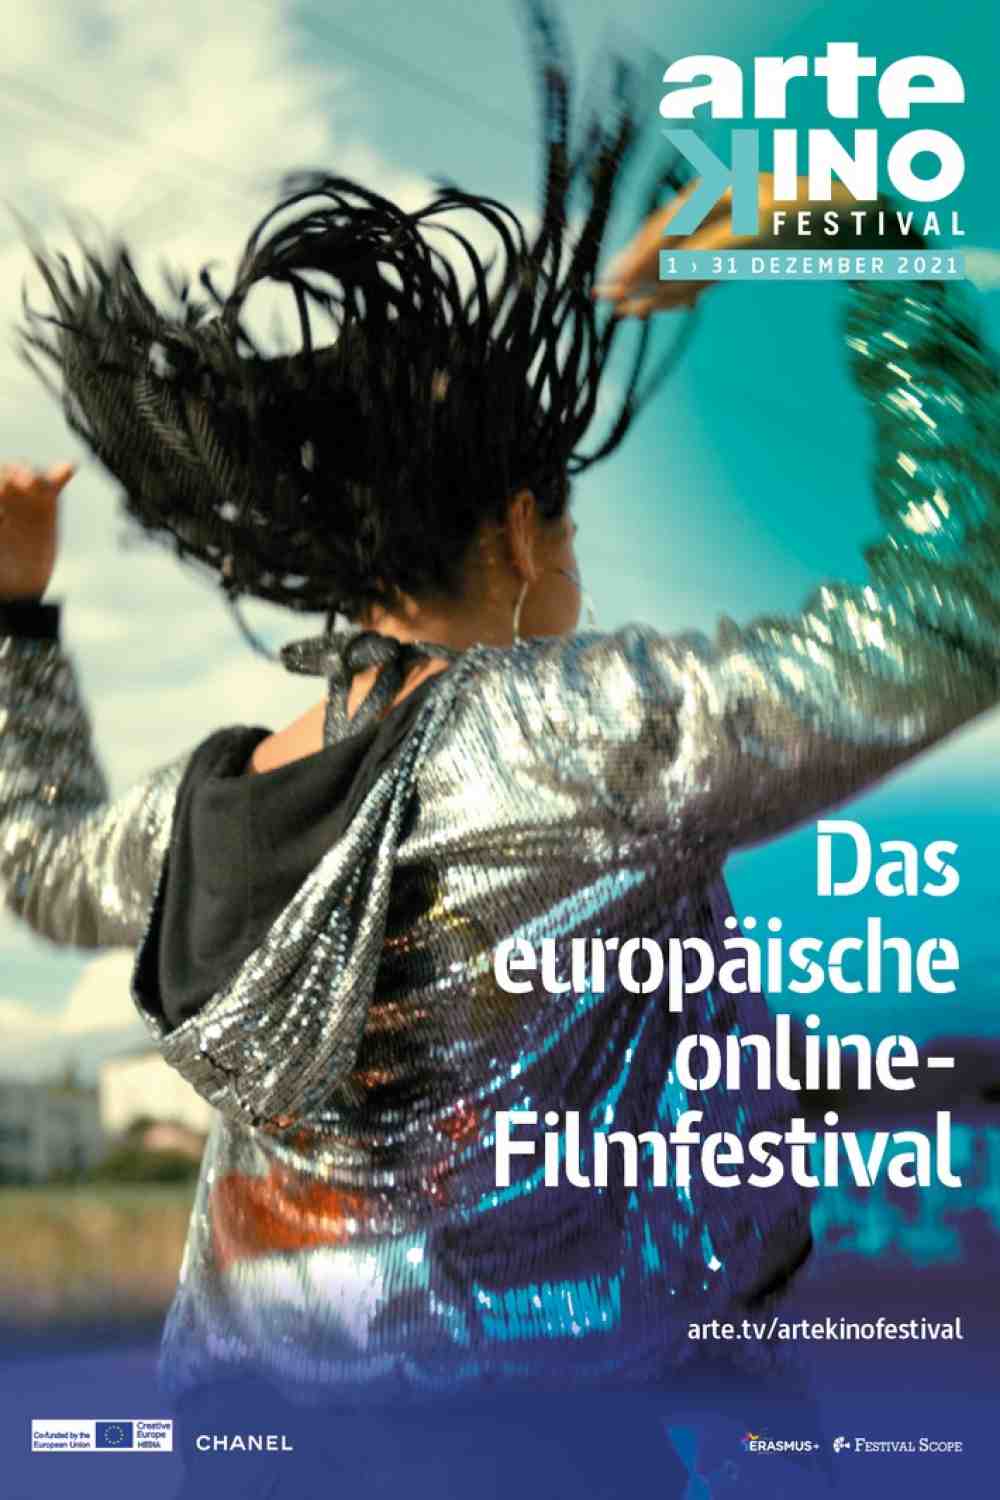 Vom 1. bis zum 31. Dezember 2021: das sechste Europäische Online-Filmfestival Arte, artekinofestival.arte.tv